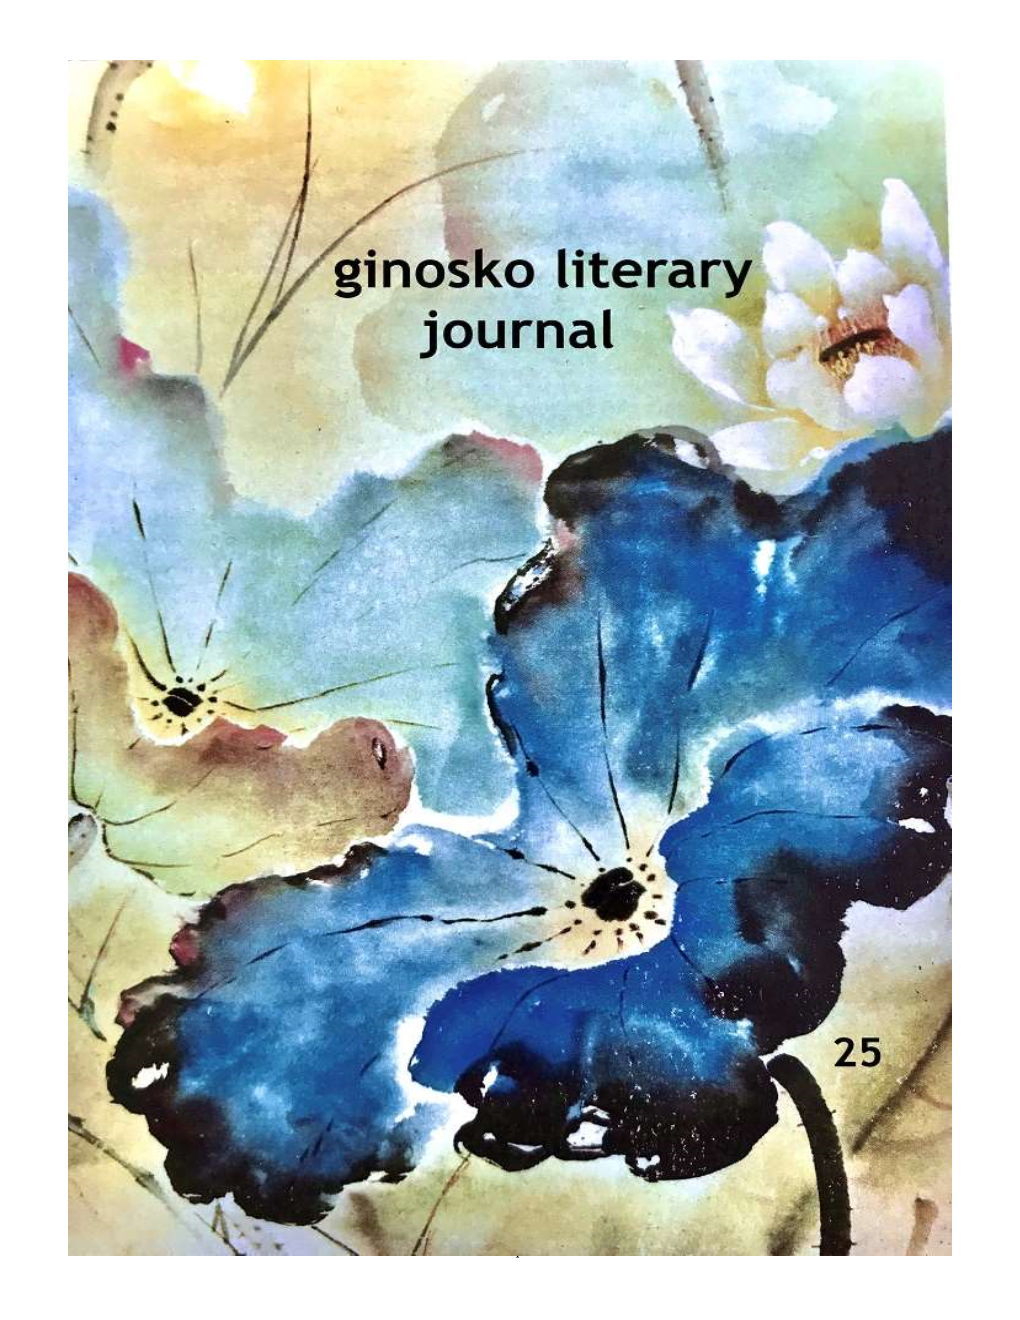 Ginosko Literary Journal #25 Proof.Docx